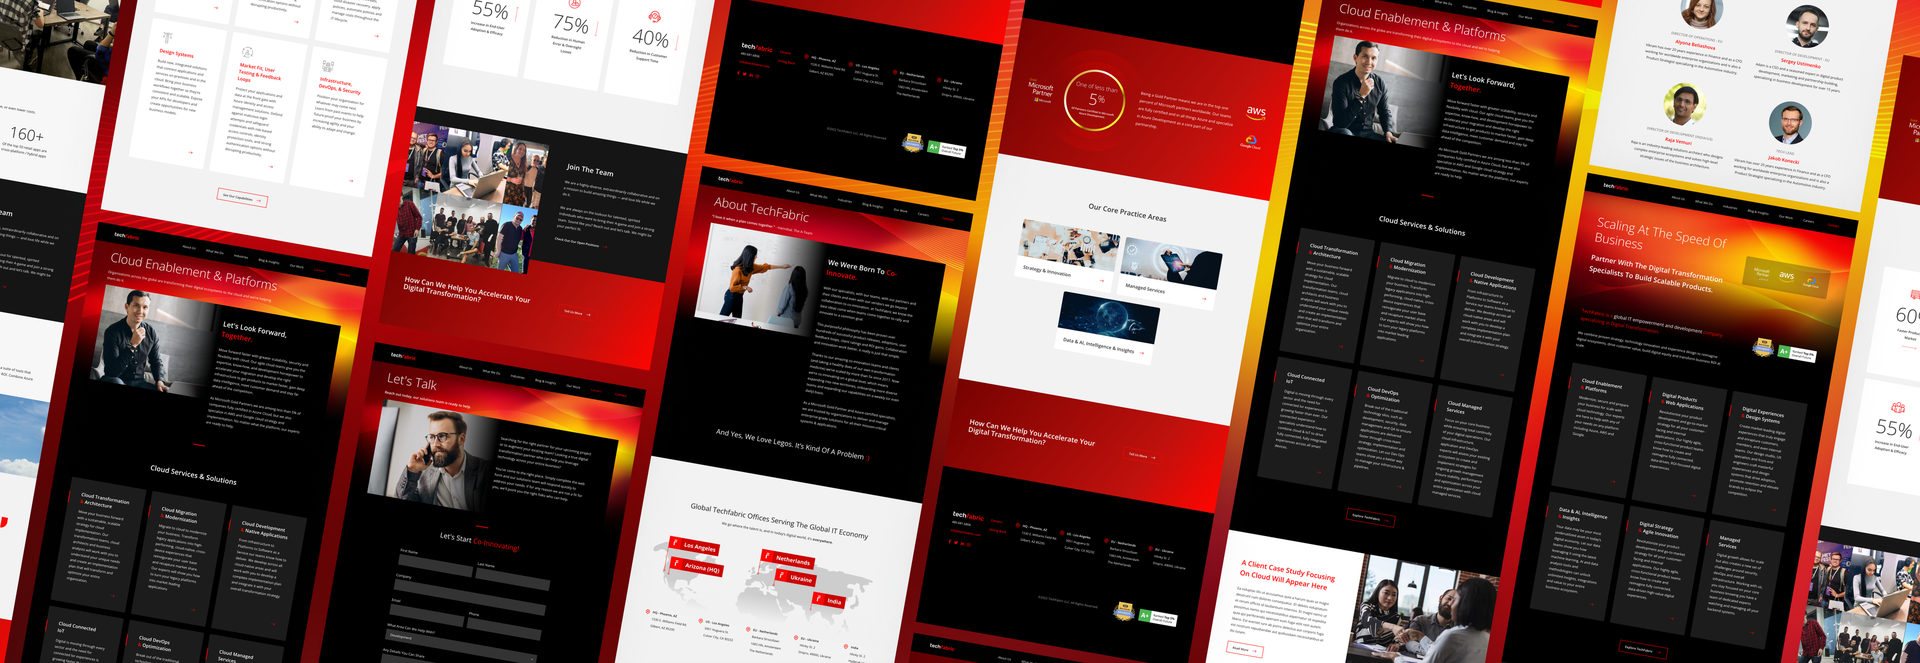 Showcase image showing many Tech Fabric website screenshots